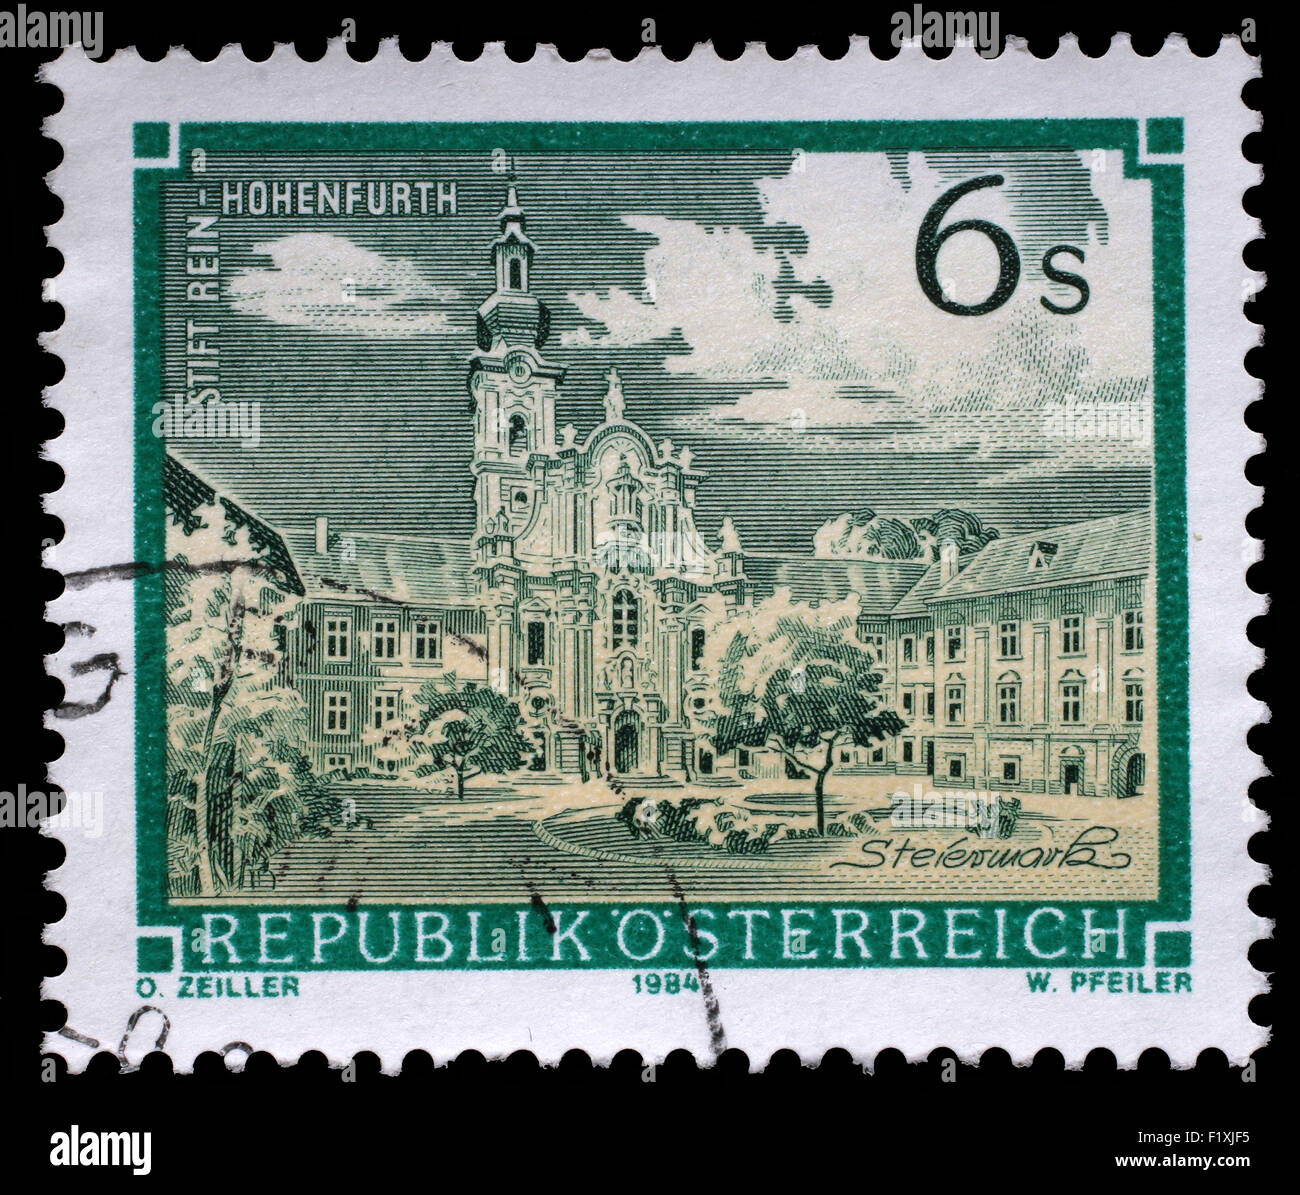 Briefmarke gedruckt in Österreich zeigt Rein Abtei, Zisterzienserkloster, Hohenfurth, Steiermark, ca. 1984 Stockfoto